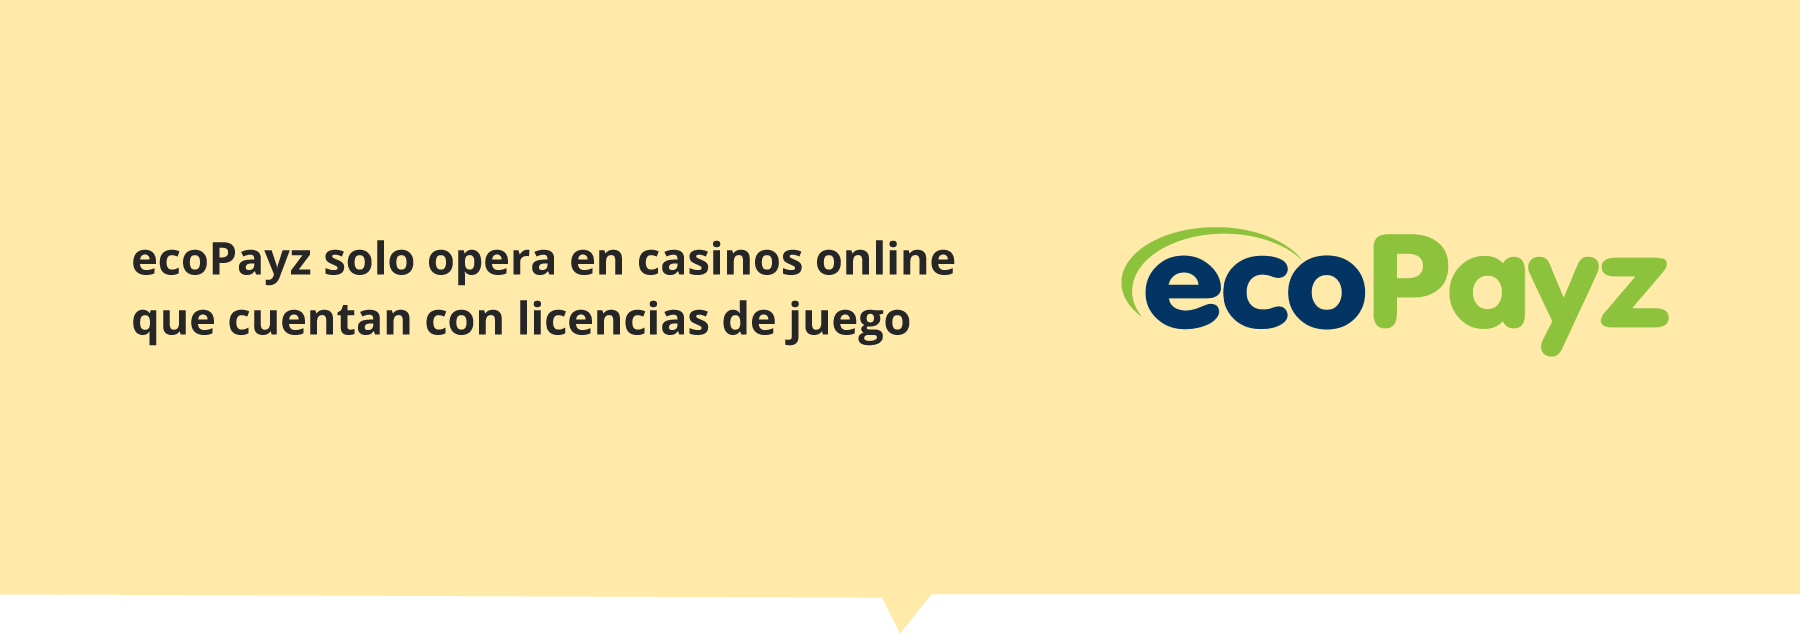 Casinos con ecoPayz en Latinoamérica